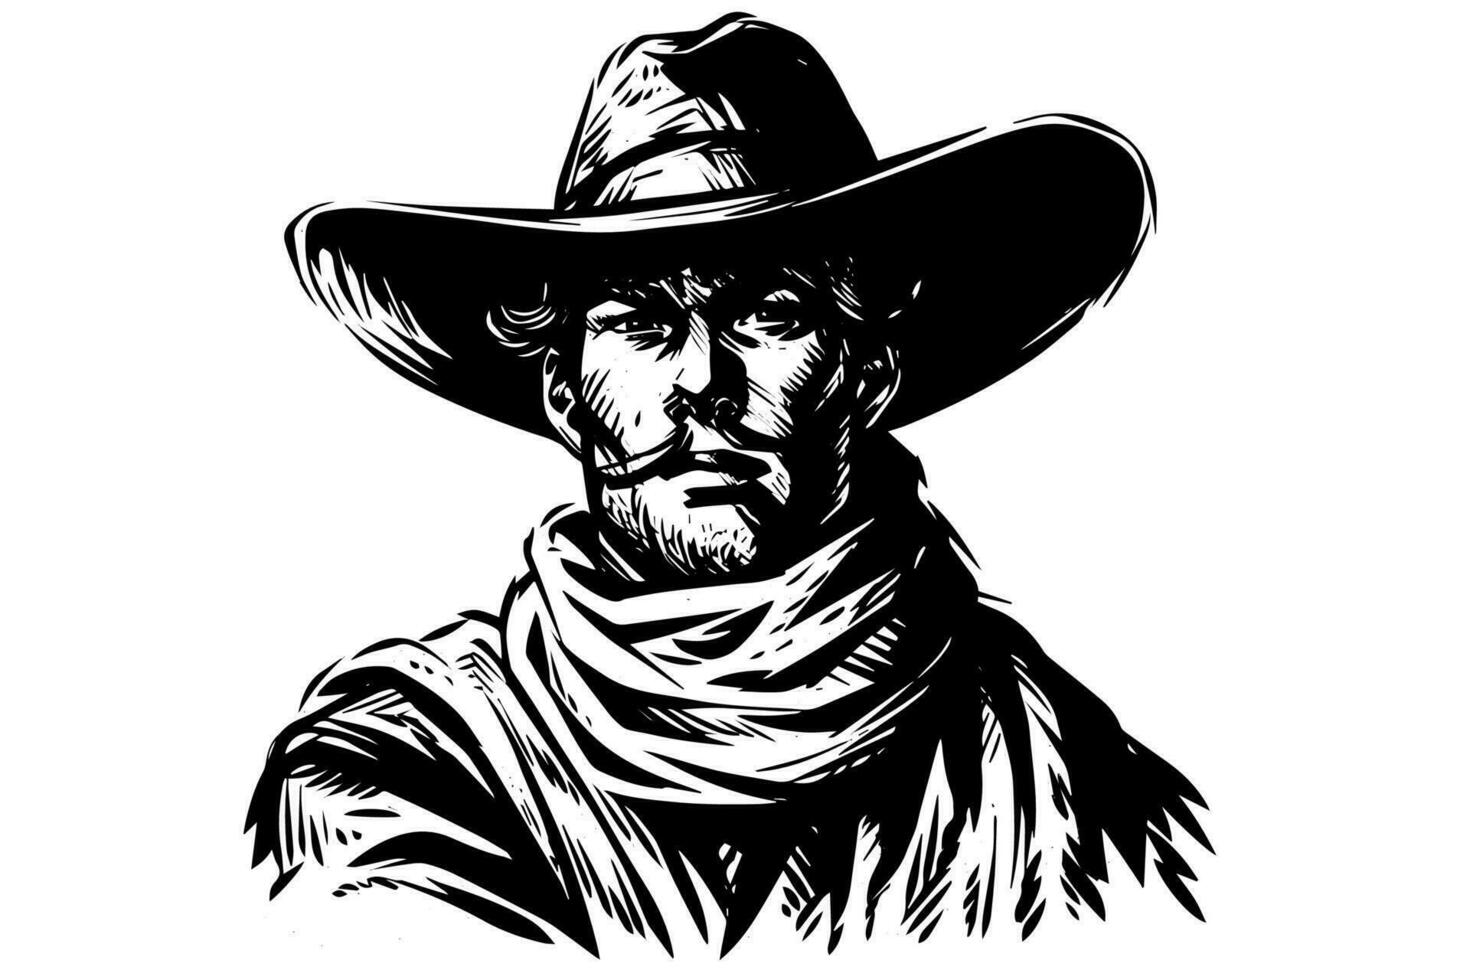 Cowboy Büste oder Kopf auf Hut im Gravur Stil. Hand gezeichnet Tinte skizzieren. Vektor Illustration.